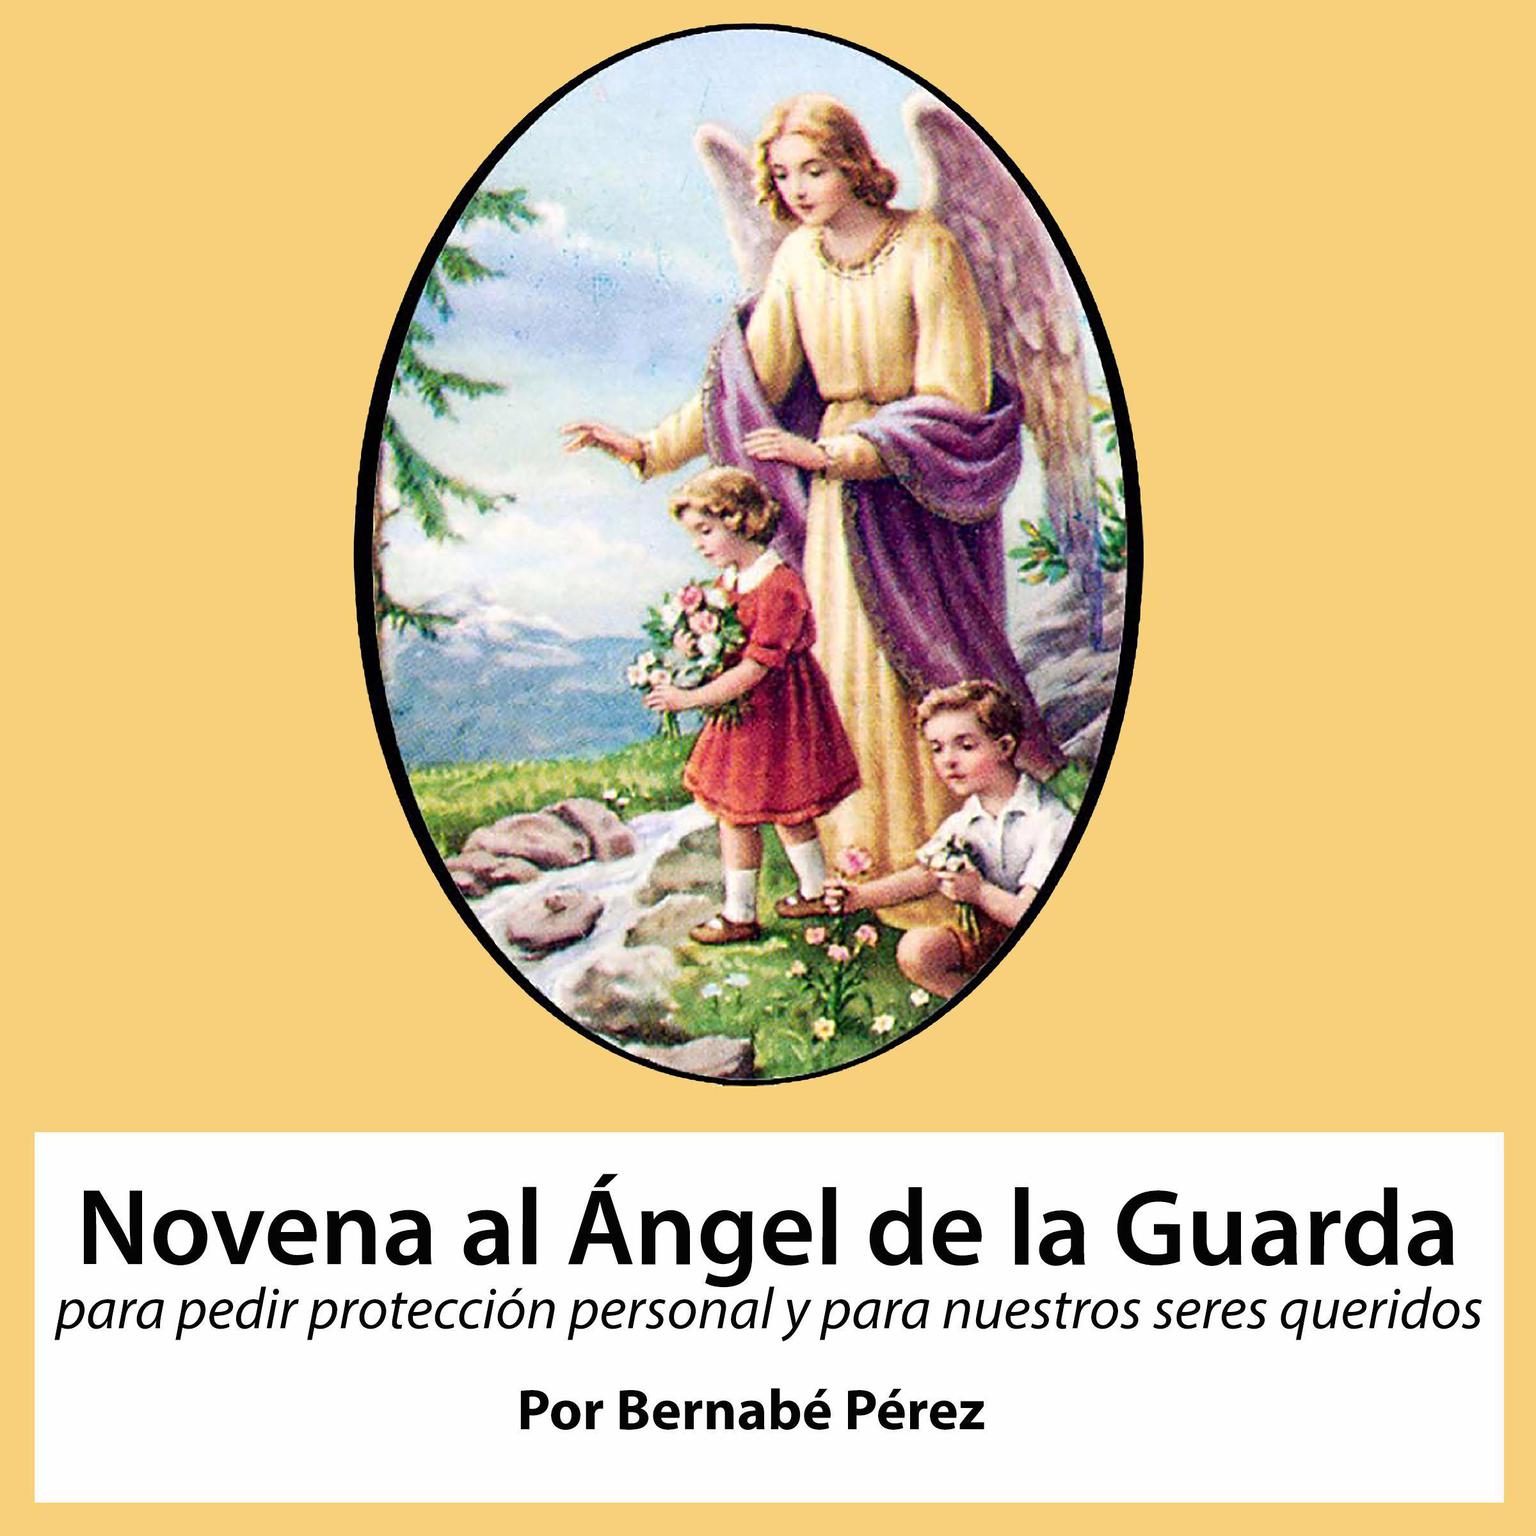 Novena al Angel de la Guarda para pedir protección personal y para nuestros seres queridos. Audiobook, by Bernabé Pérez